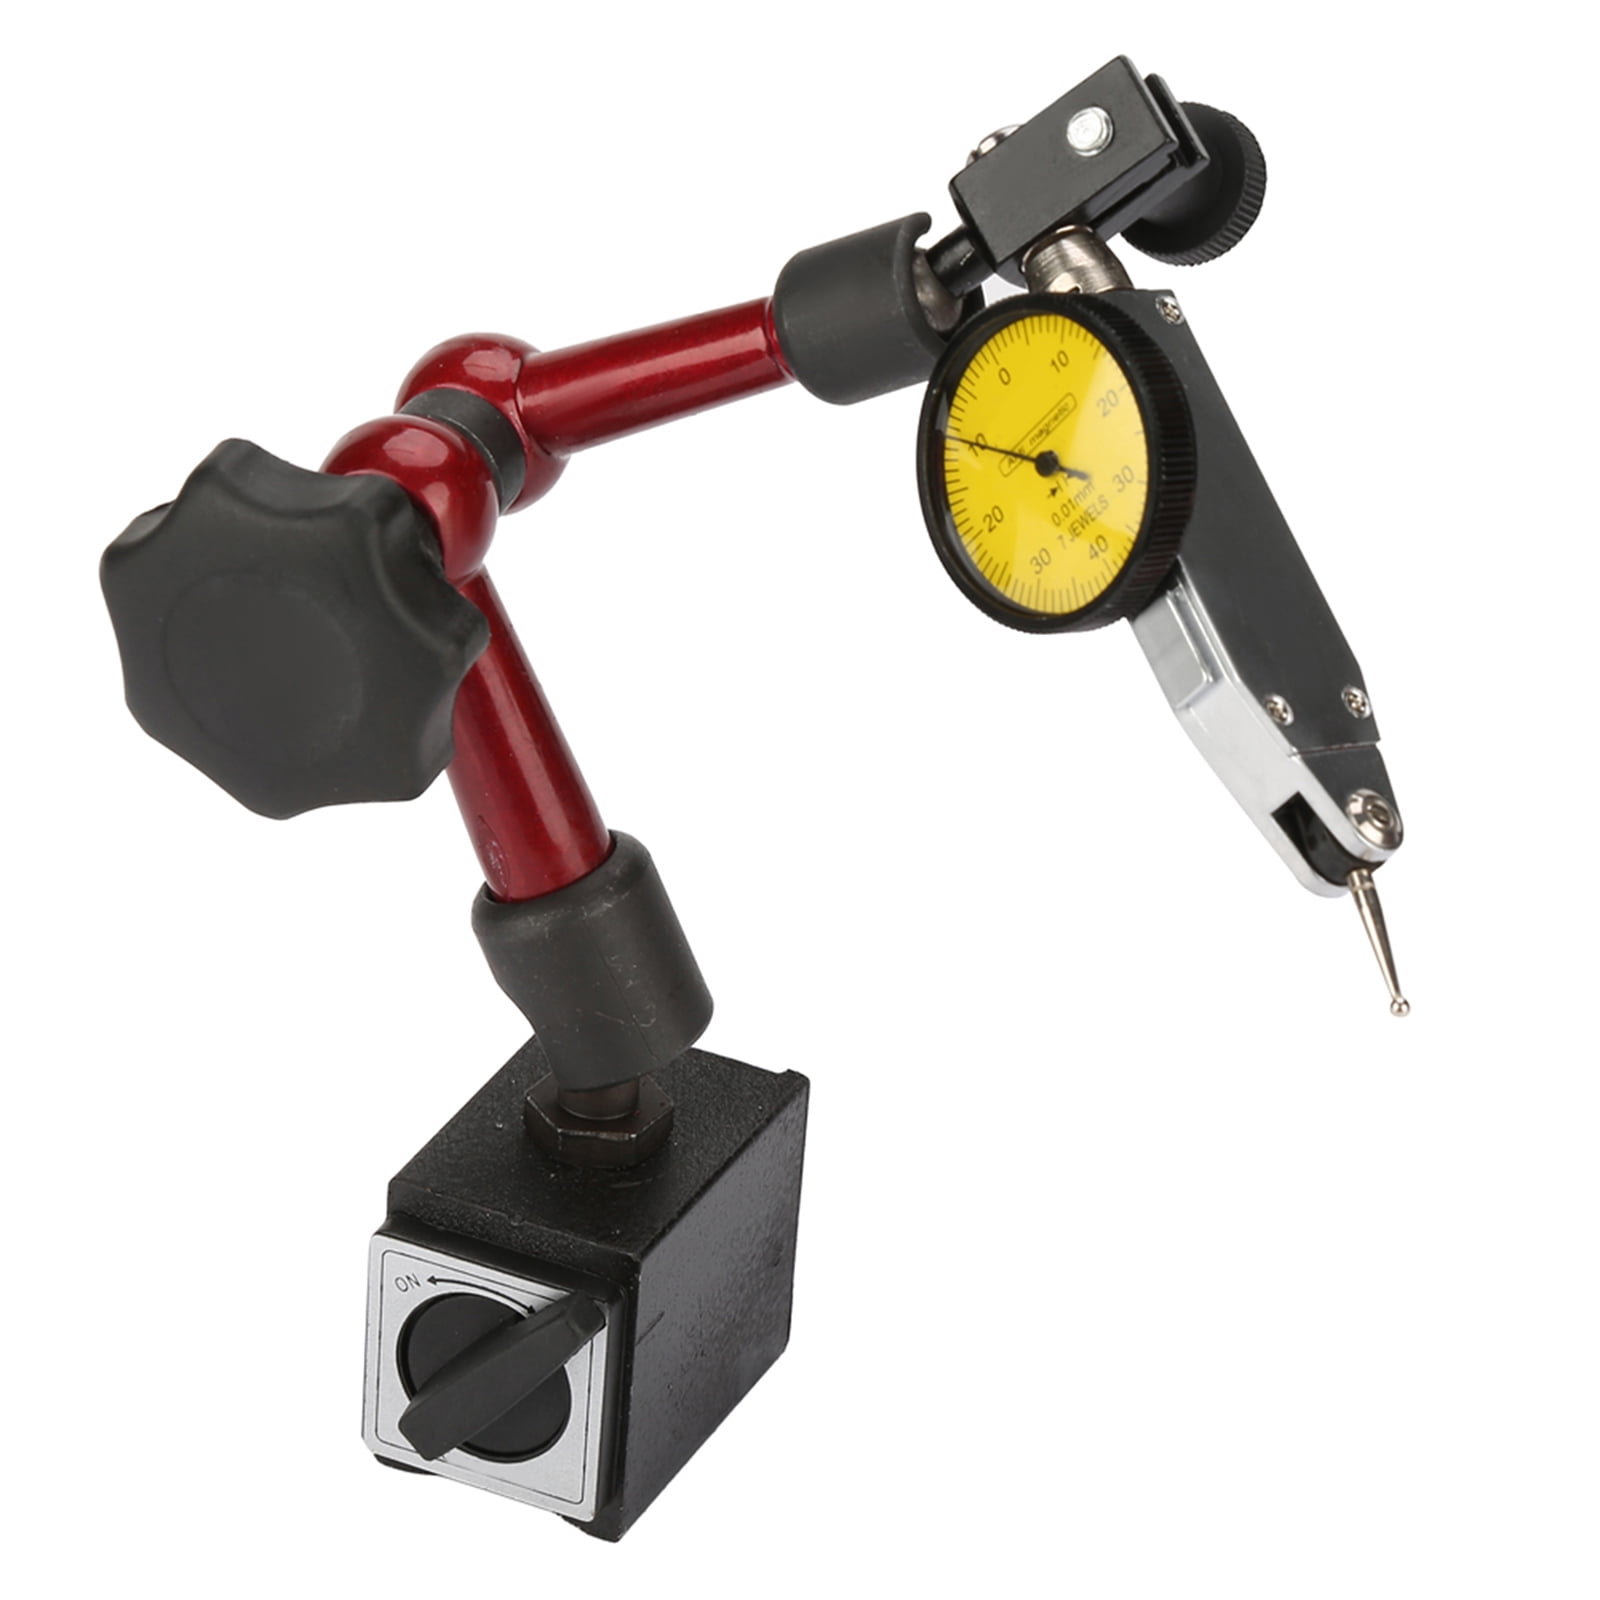 Adjustable Magnetic Base Holder Stand for Dial Test Gauge Indicator Flexible Too 